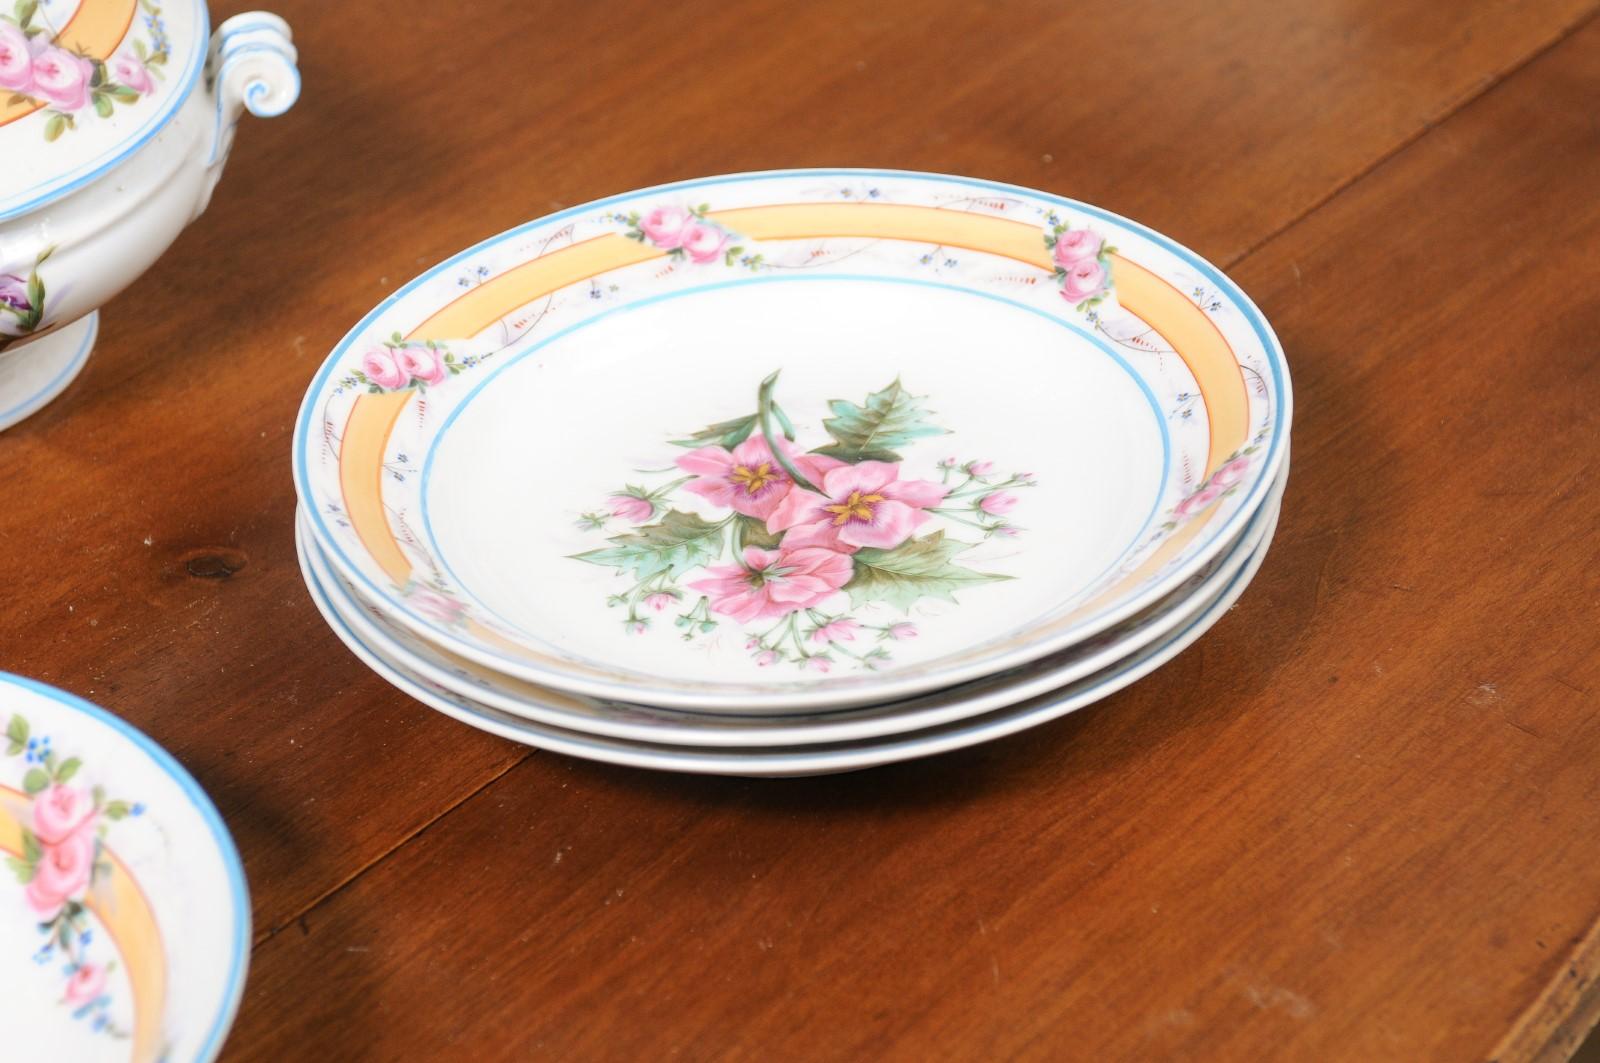 Porcelaine de Paris 19th Century Floral Dish Set with Casserole and Plates 1